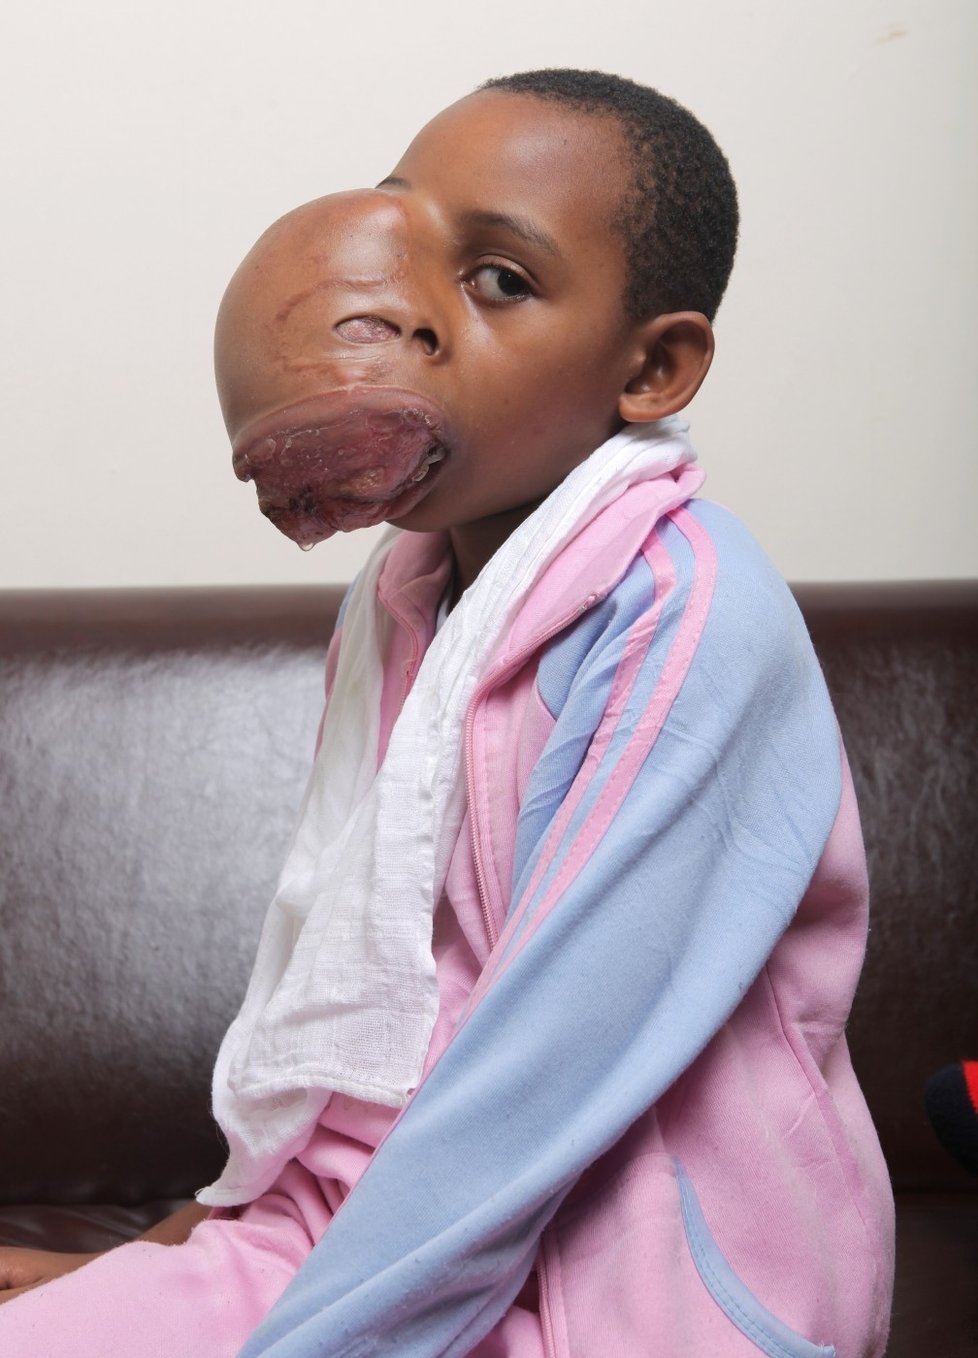 Trinny Amuhirwe (8) by si měla hrát s panenkami. Místo toho se ale připravuje na náročnou operaci